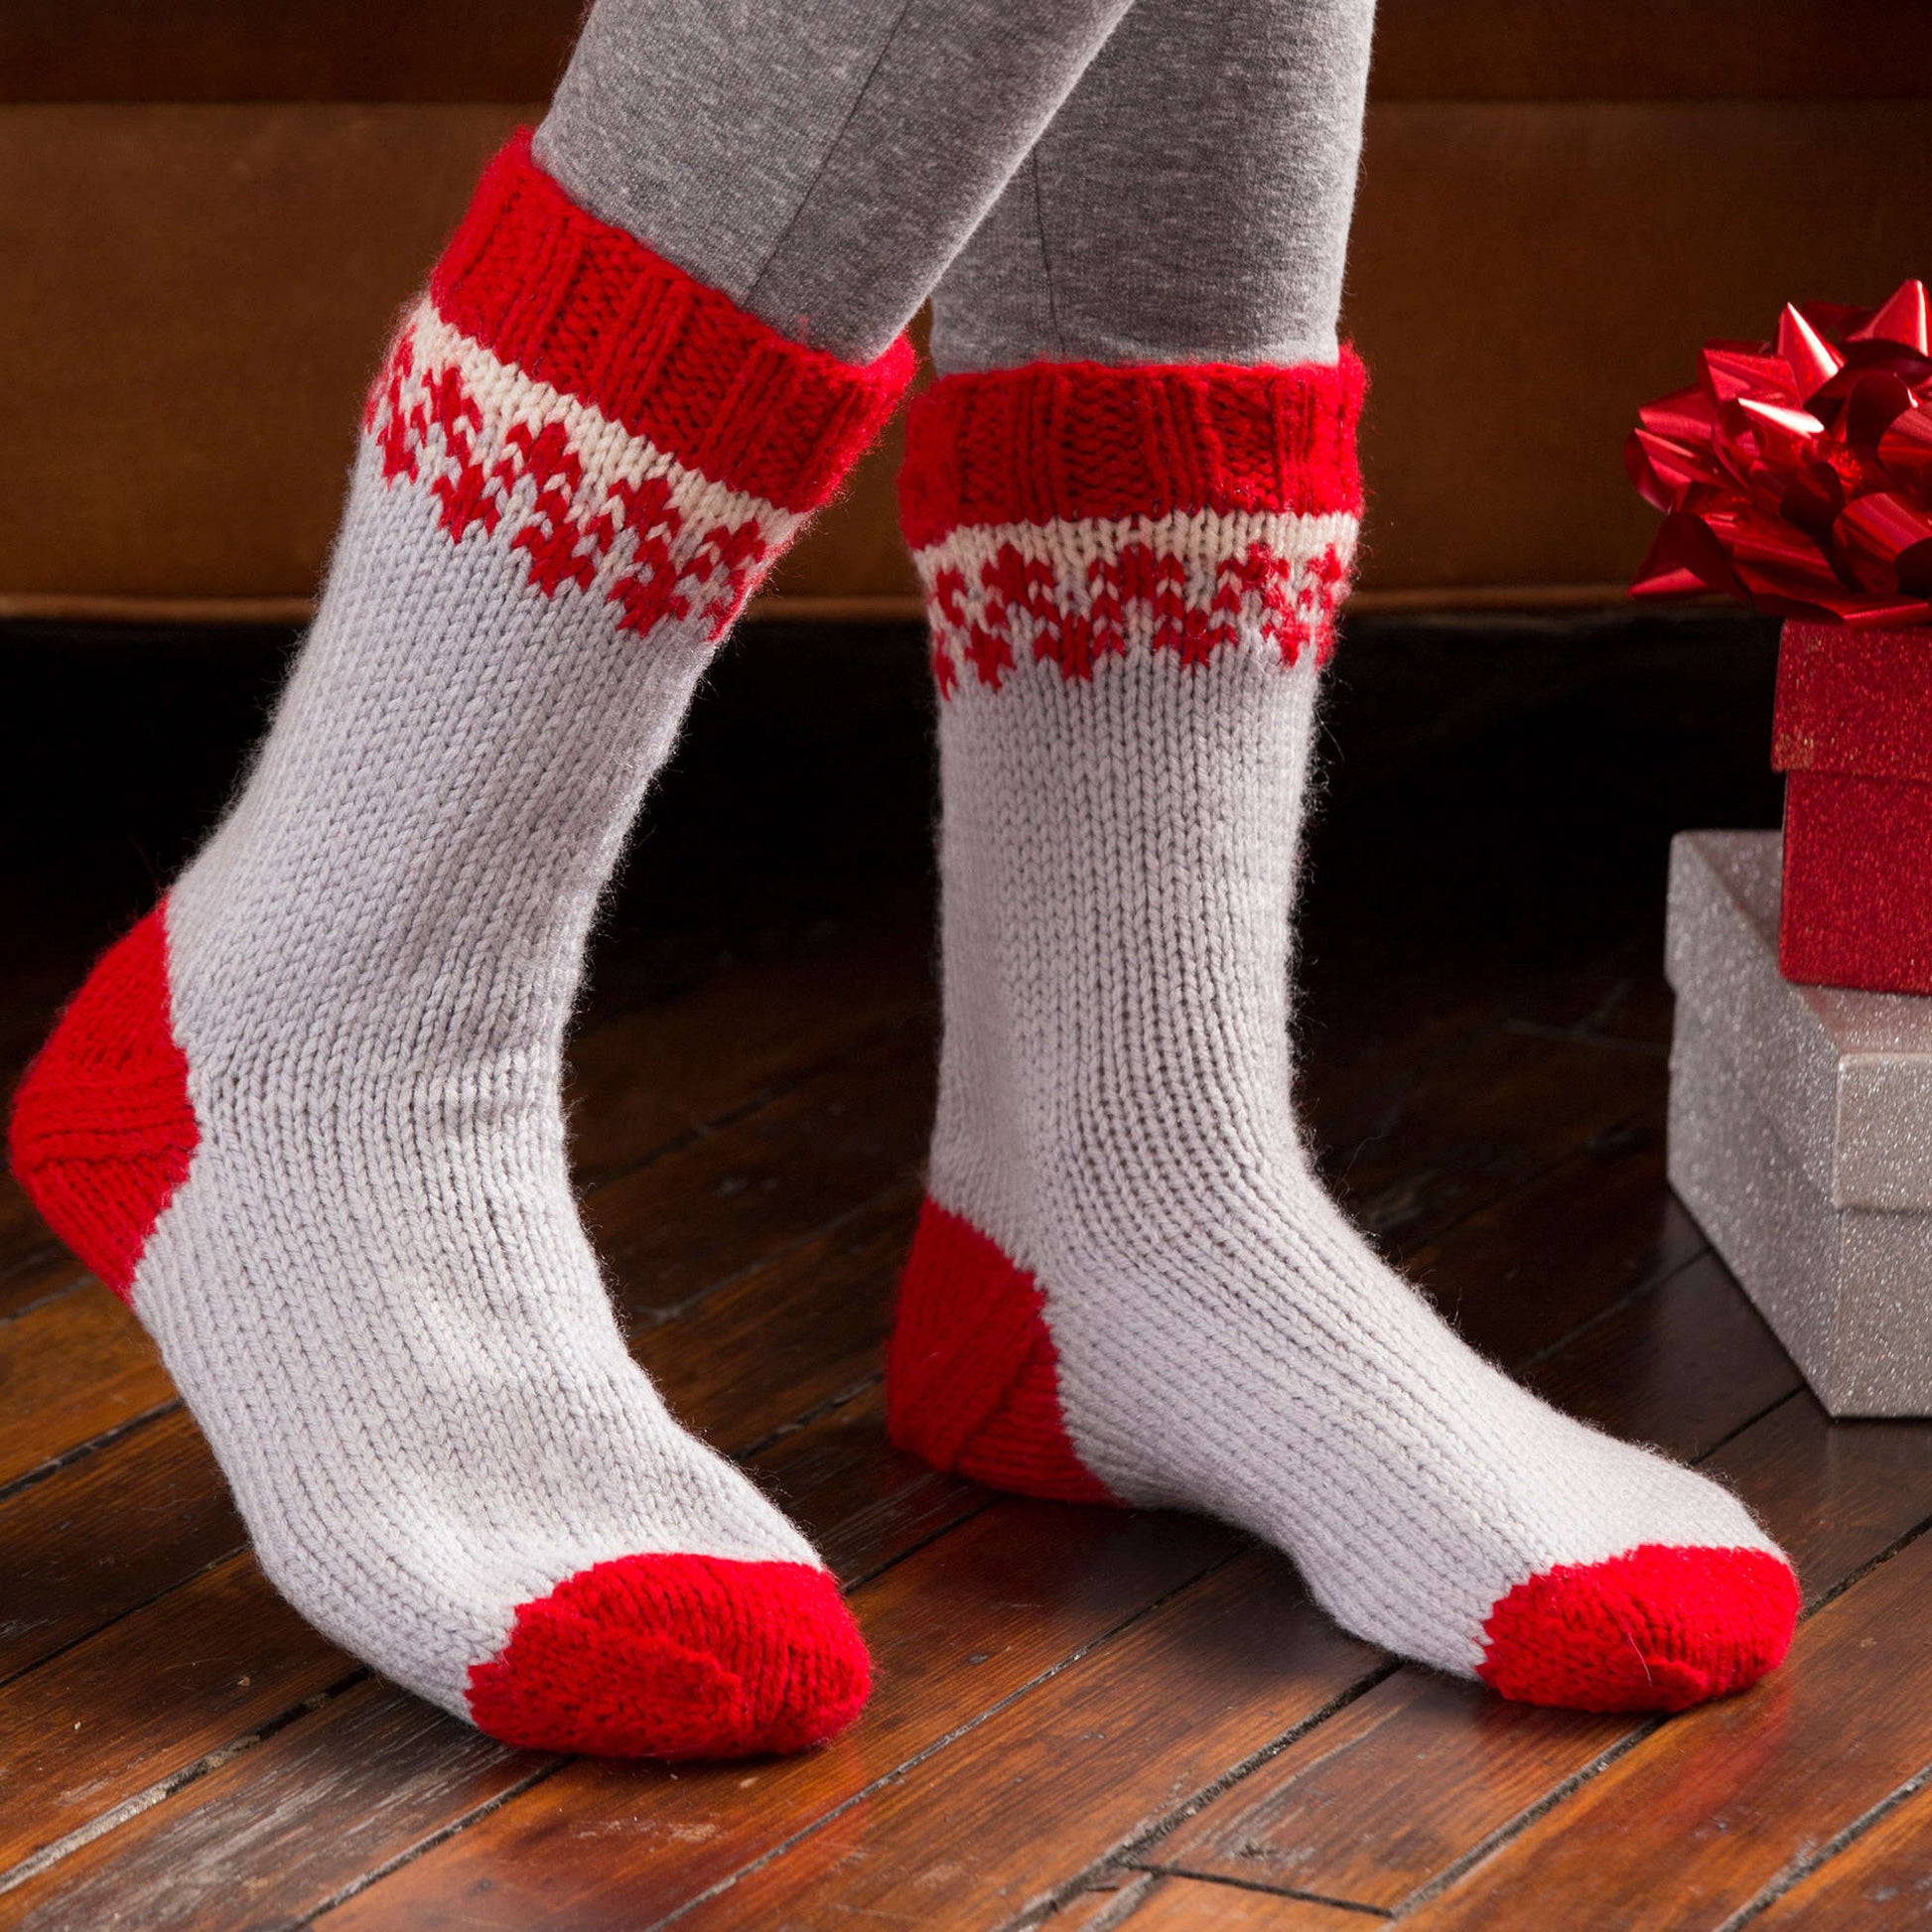 Free Red Heart Christmas Morning Slipper Socks Knit Pattern